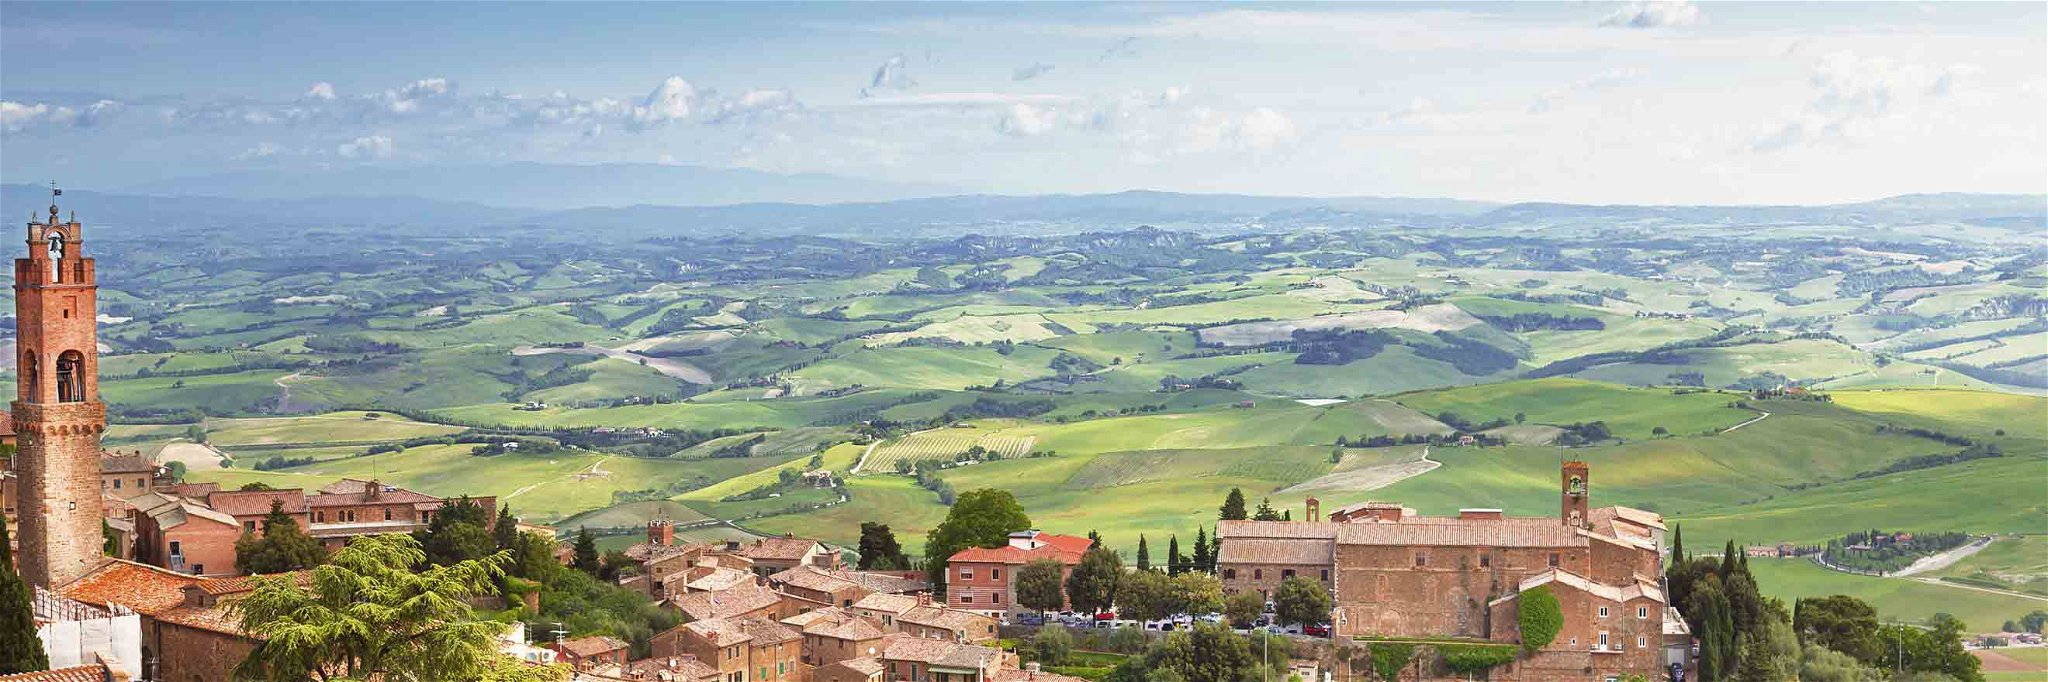 Aussicht auf die mittelalterliche italienische Stadt Montalcino.